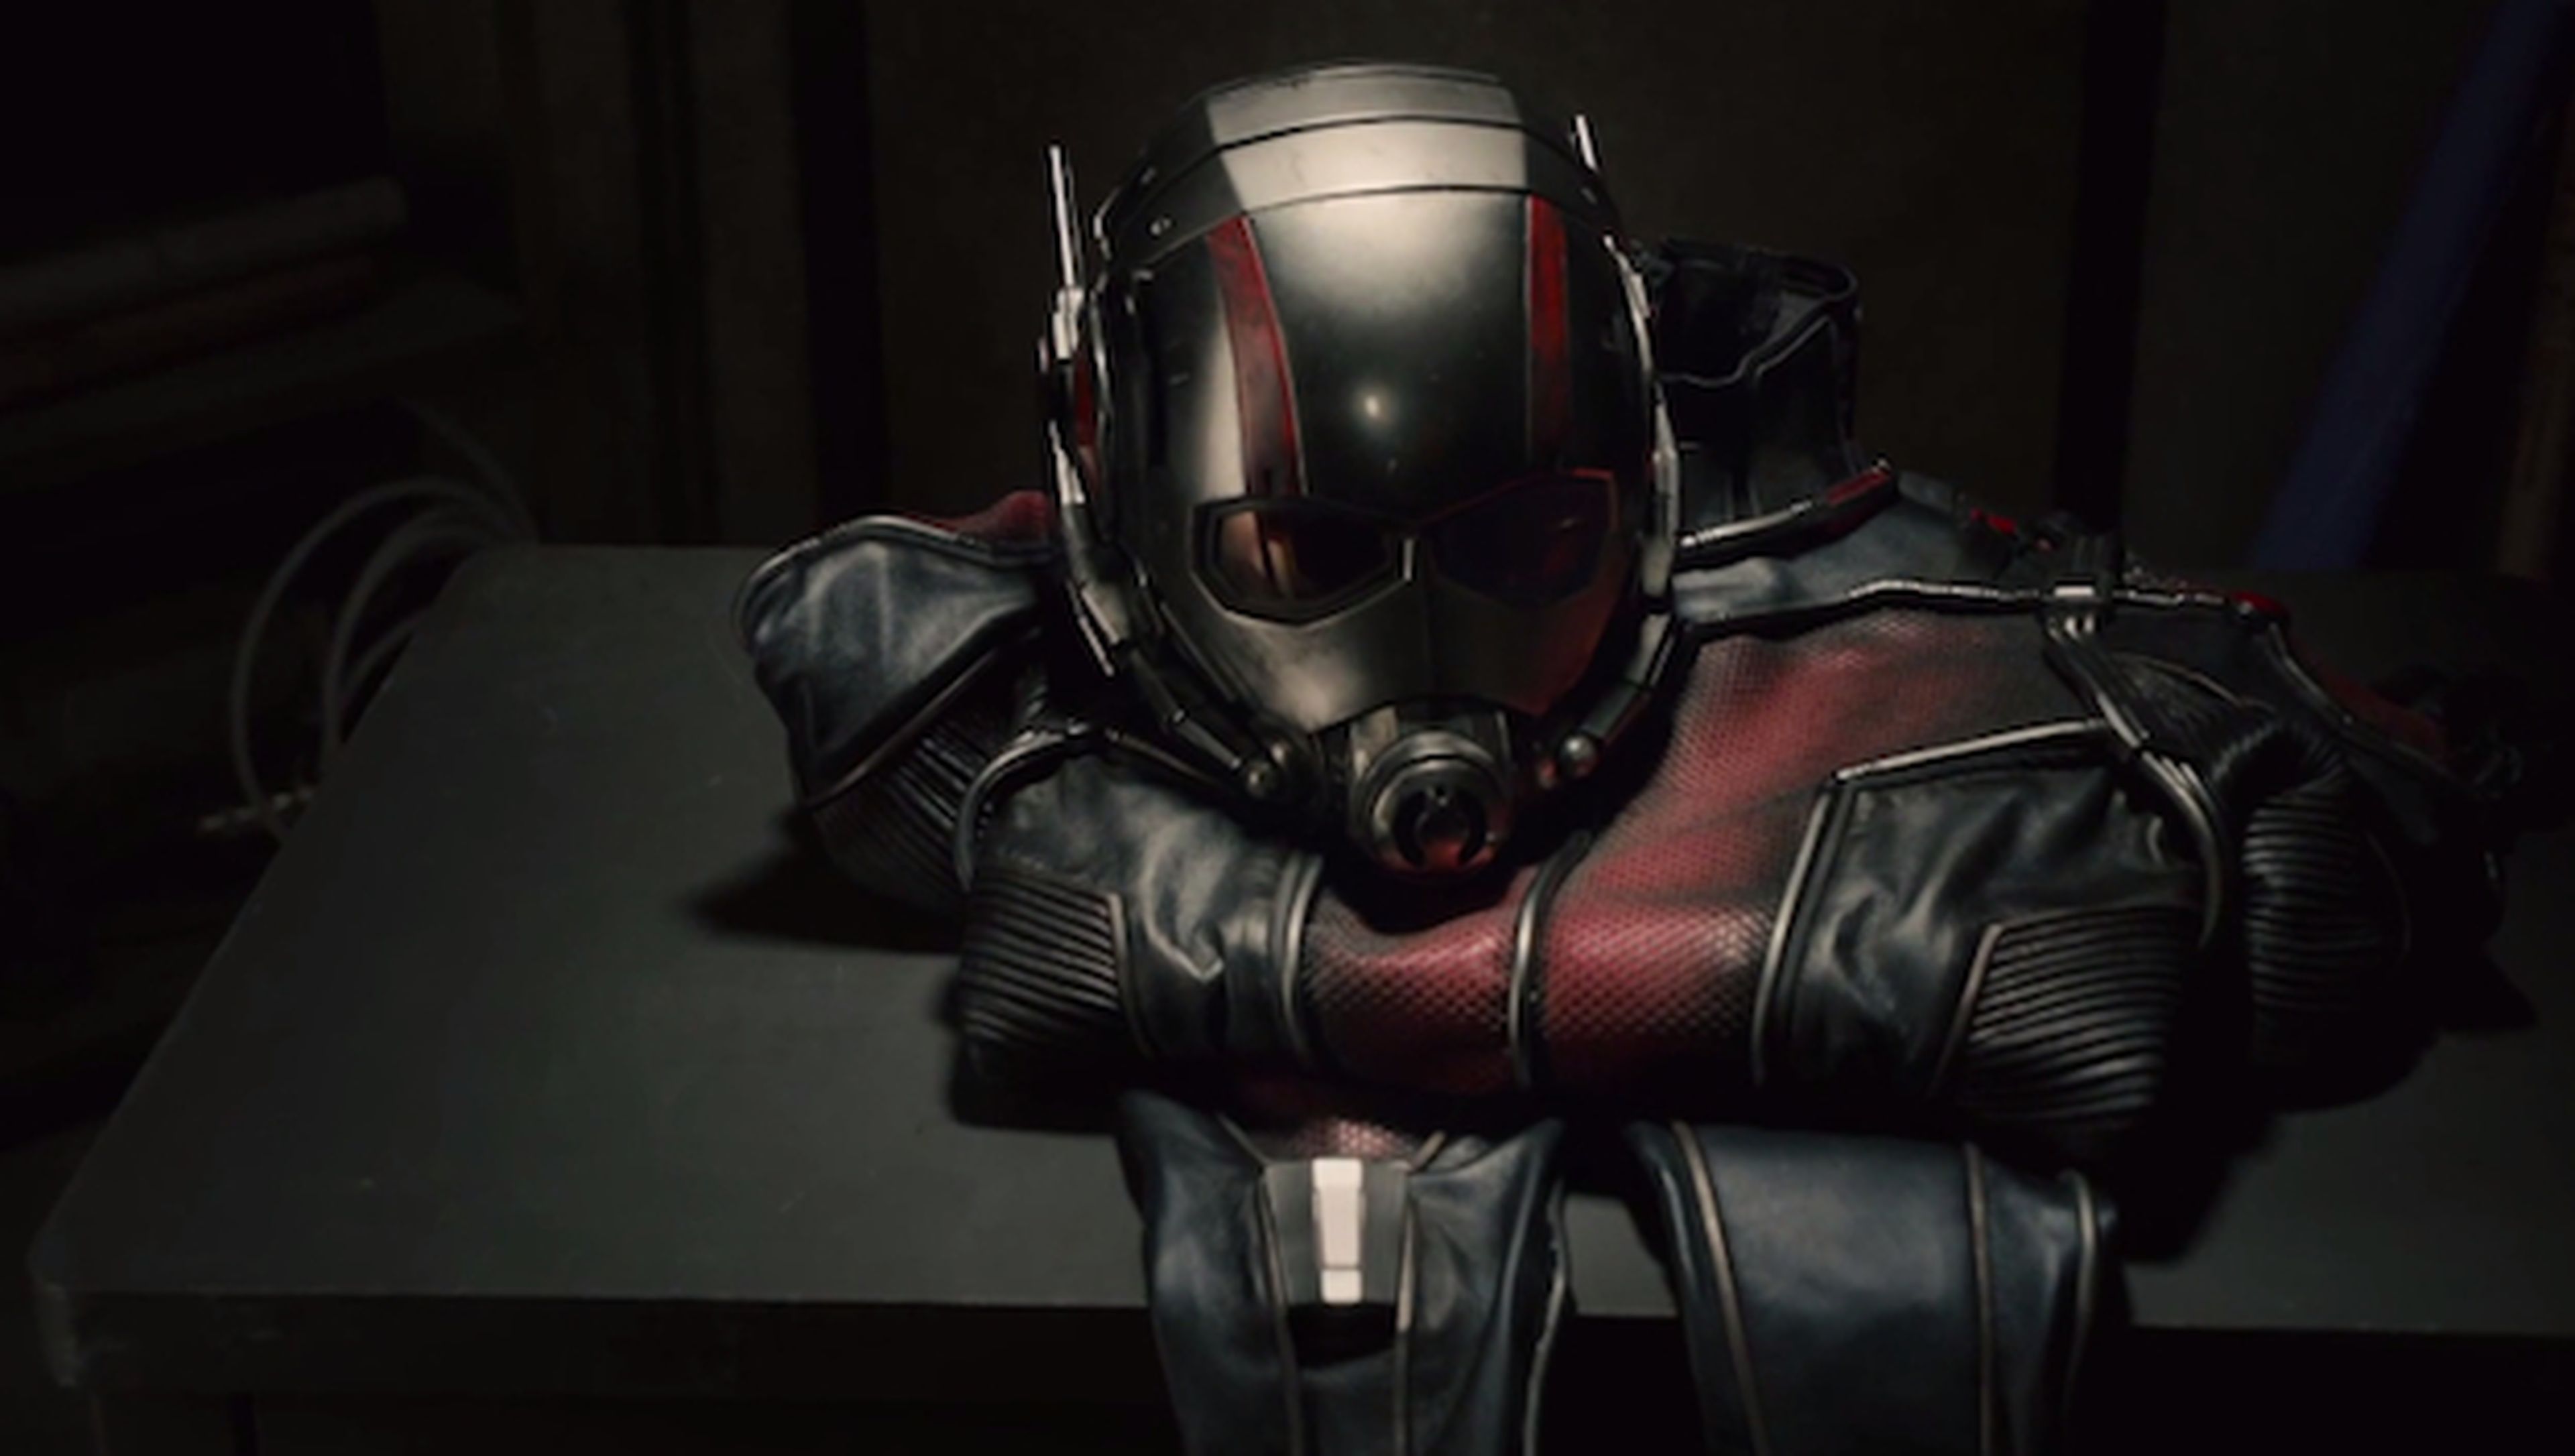 Primer trailer oficial de Ant-Man, nueva película de Marvel